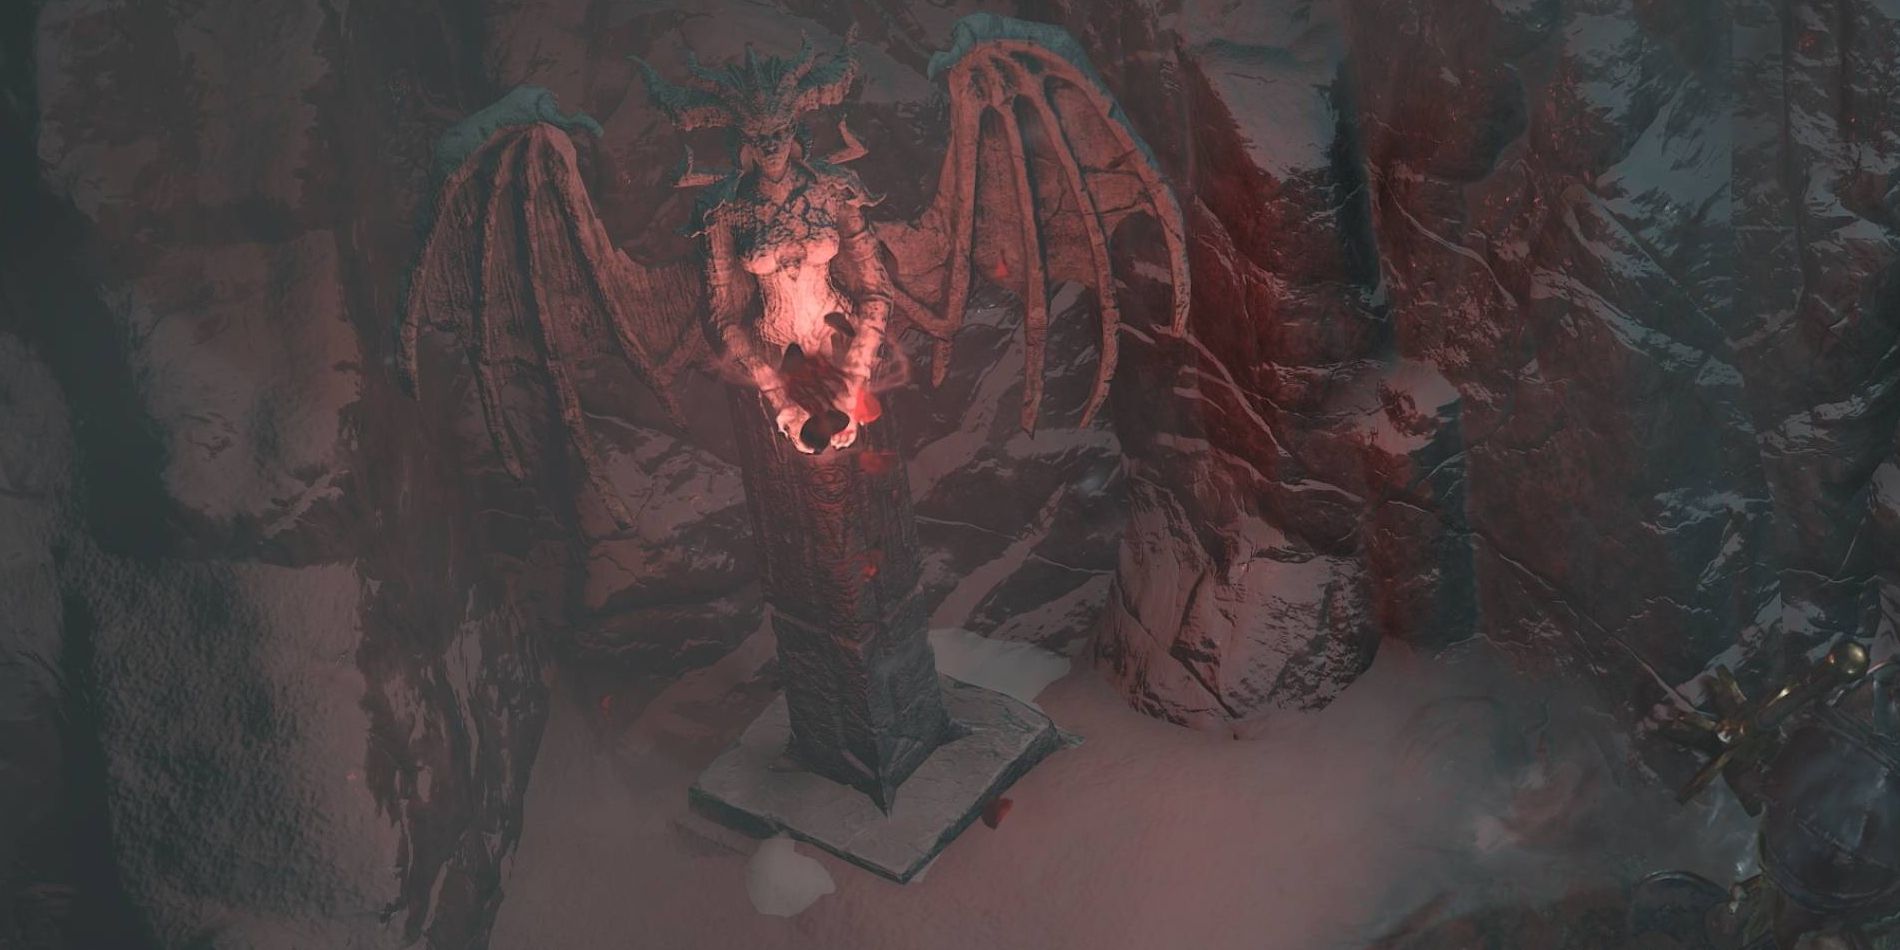 Une statue de l'antagoniste cornue et ailée Lilith rougeoyante dans une niche rocheuse couverte de neige.